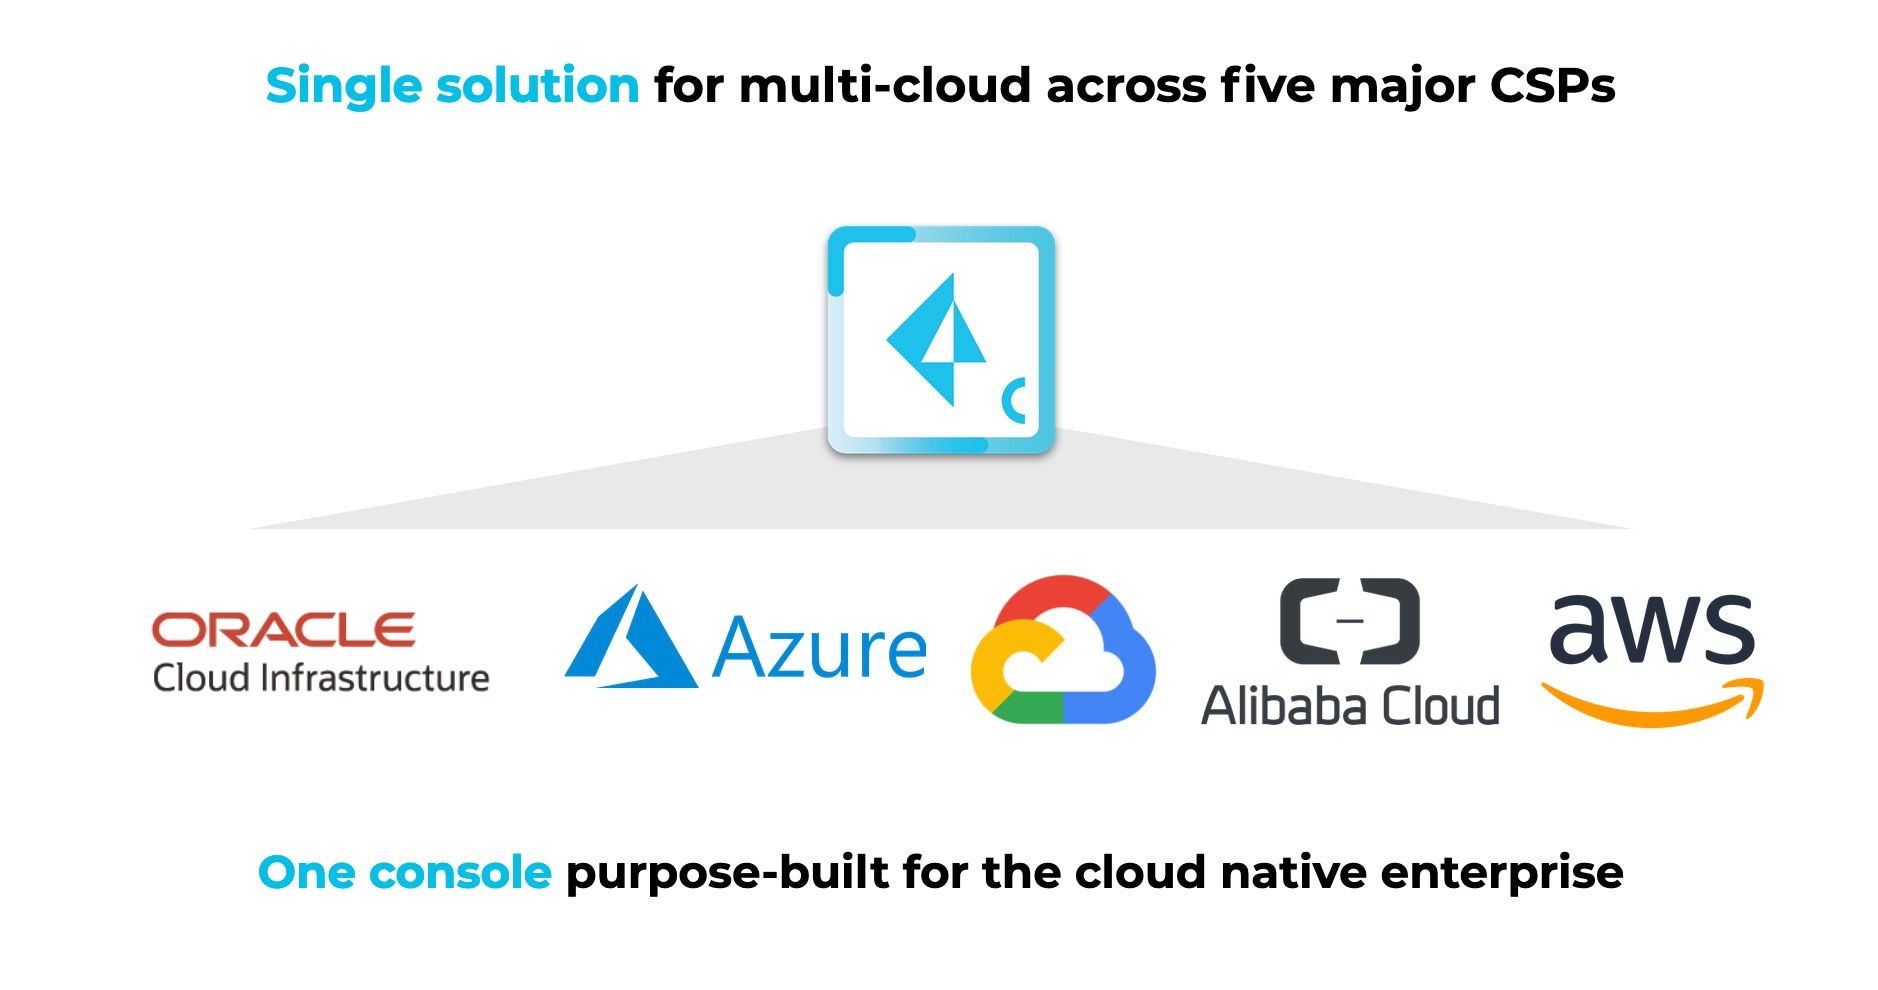 Single solution for multi-cloud across five major CSPs. One console purpose-built for the cloud native enterprise. 